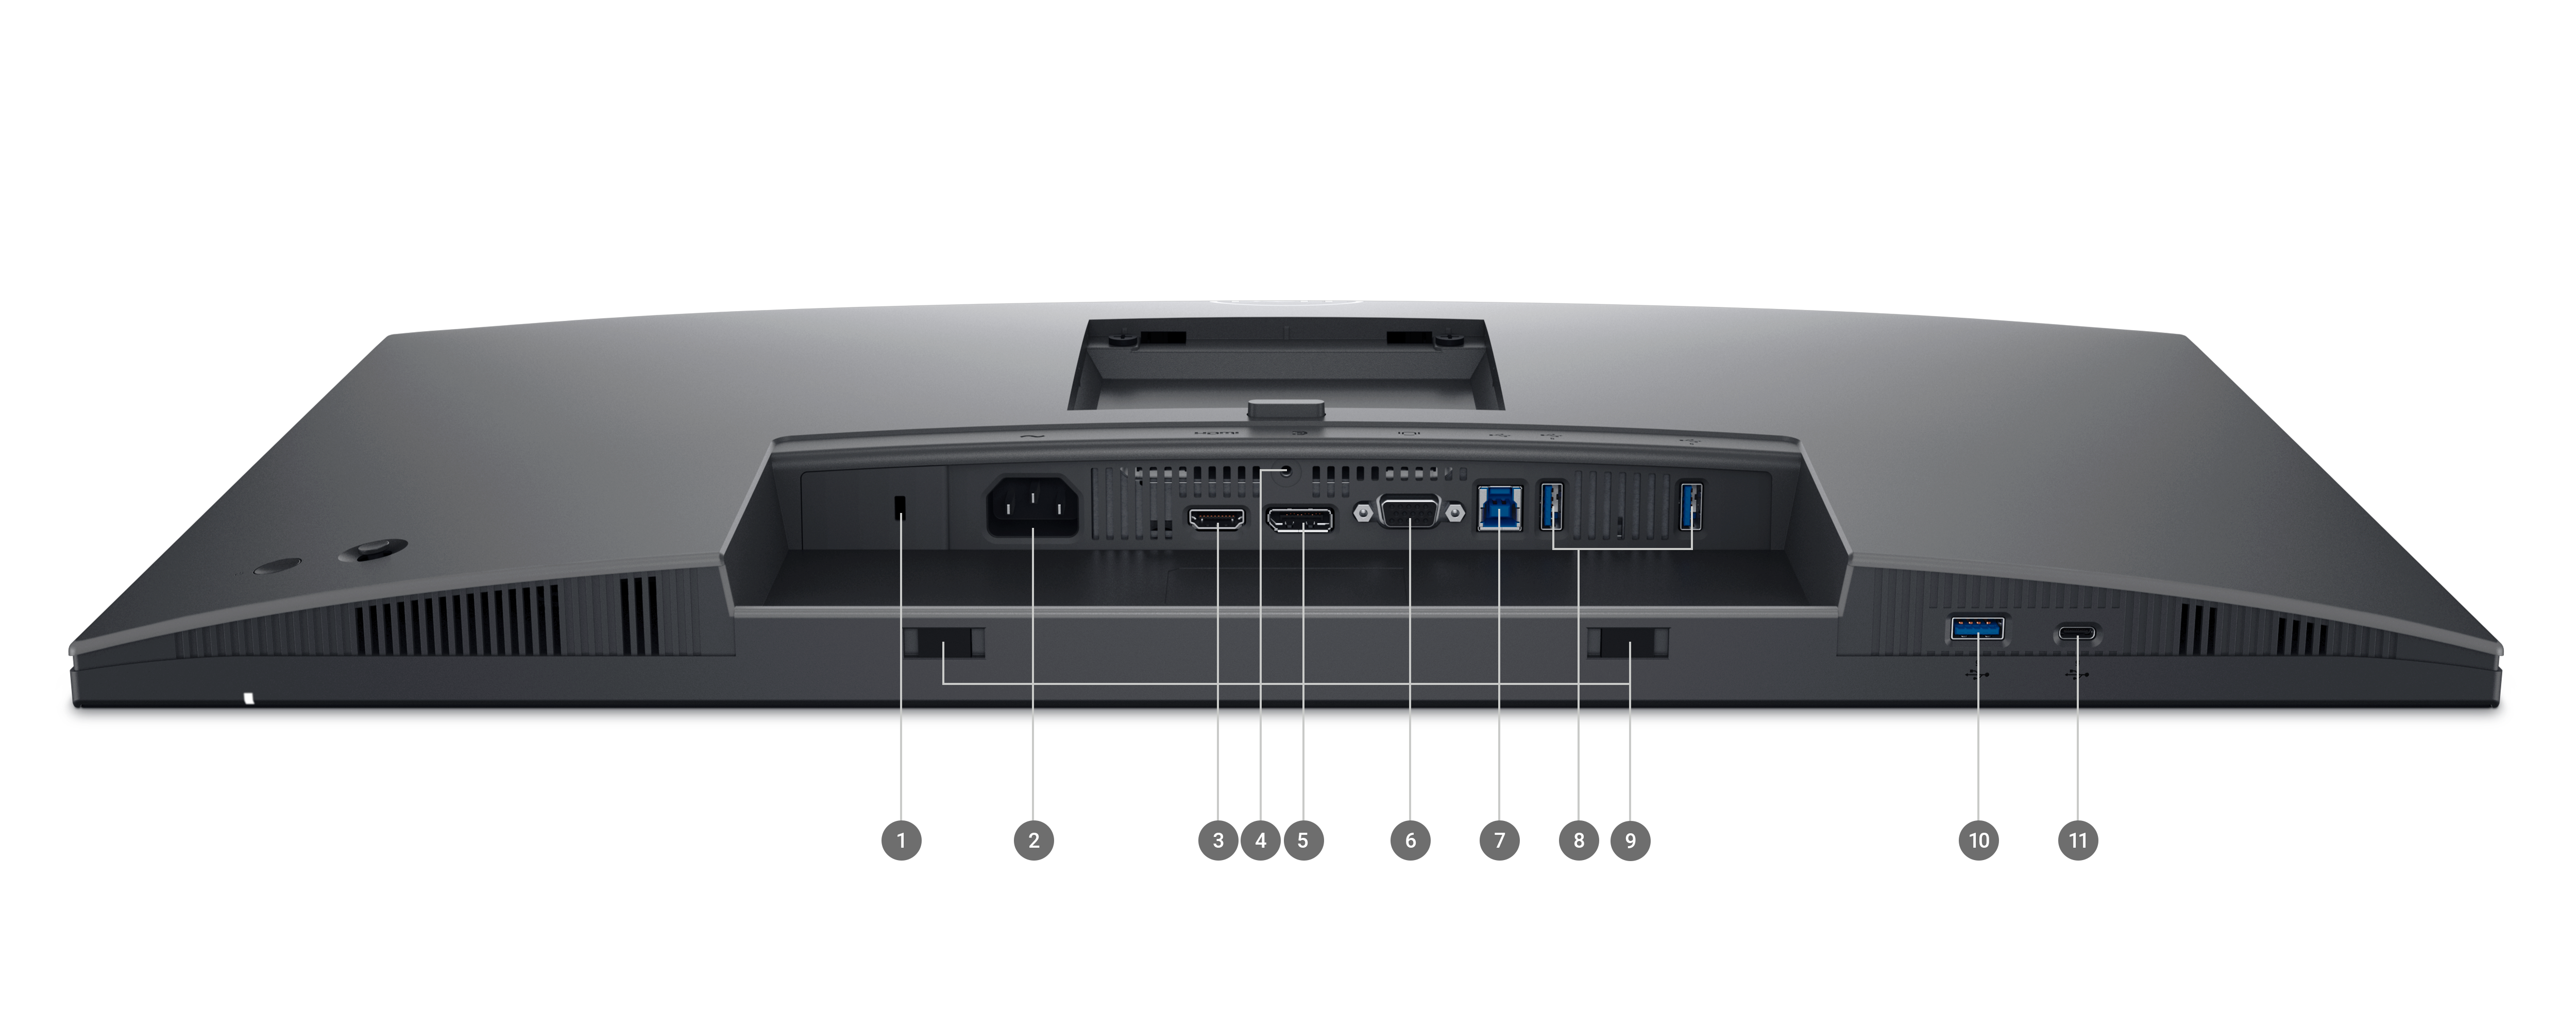 Dell 2725H-Monitor der P-Serie mit dem Bildschirm nach unten und Zahlen von 1 bis 11 zur Kennzeichnung der verfügbaren Anschlüsse und Steckplätze